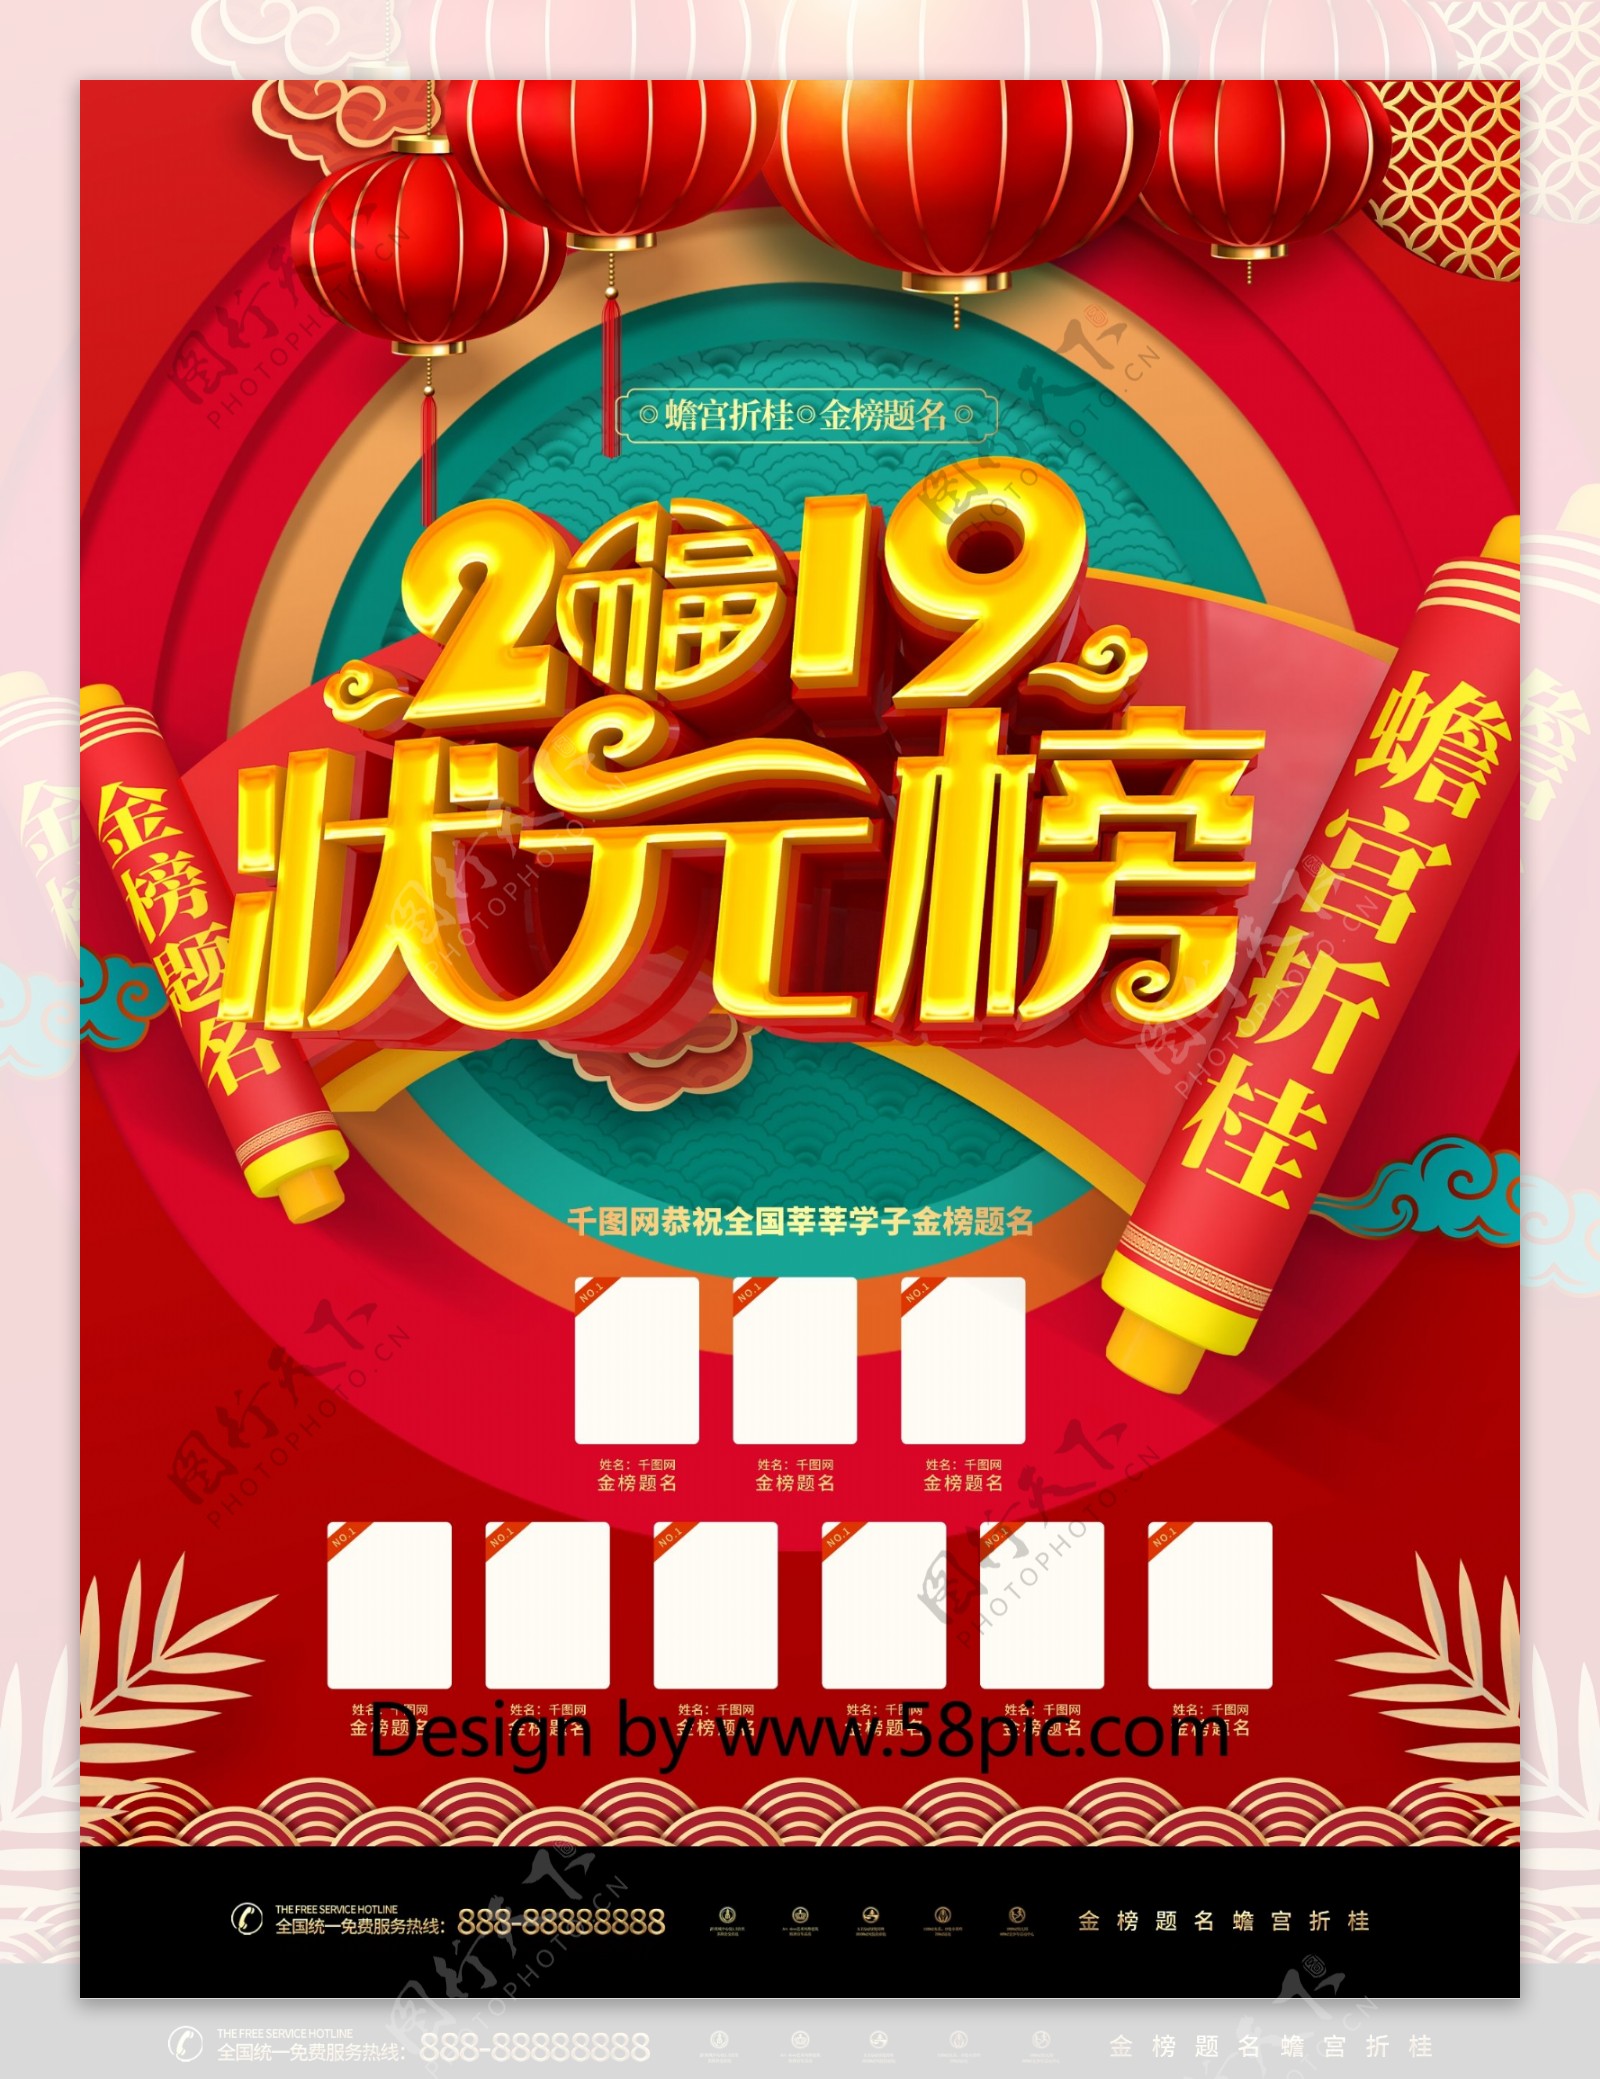 C4D创意新式中国风状元榜高考喜报海报